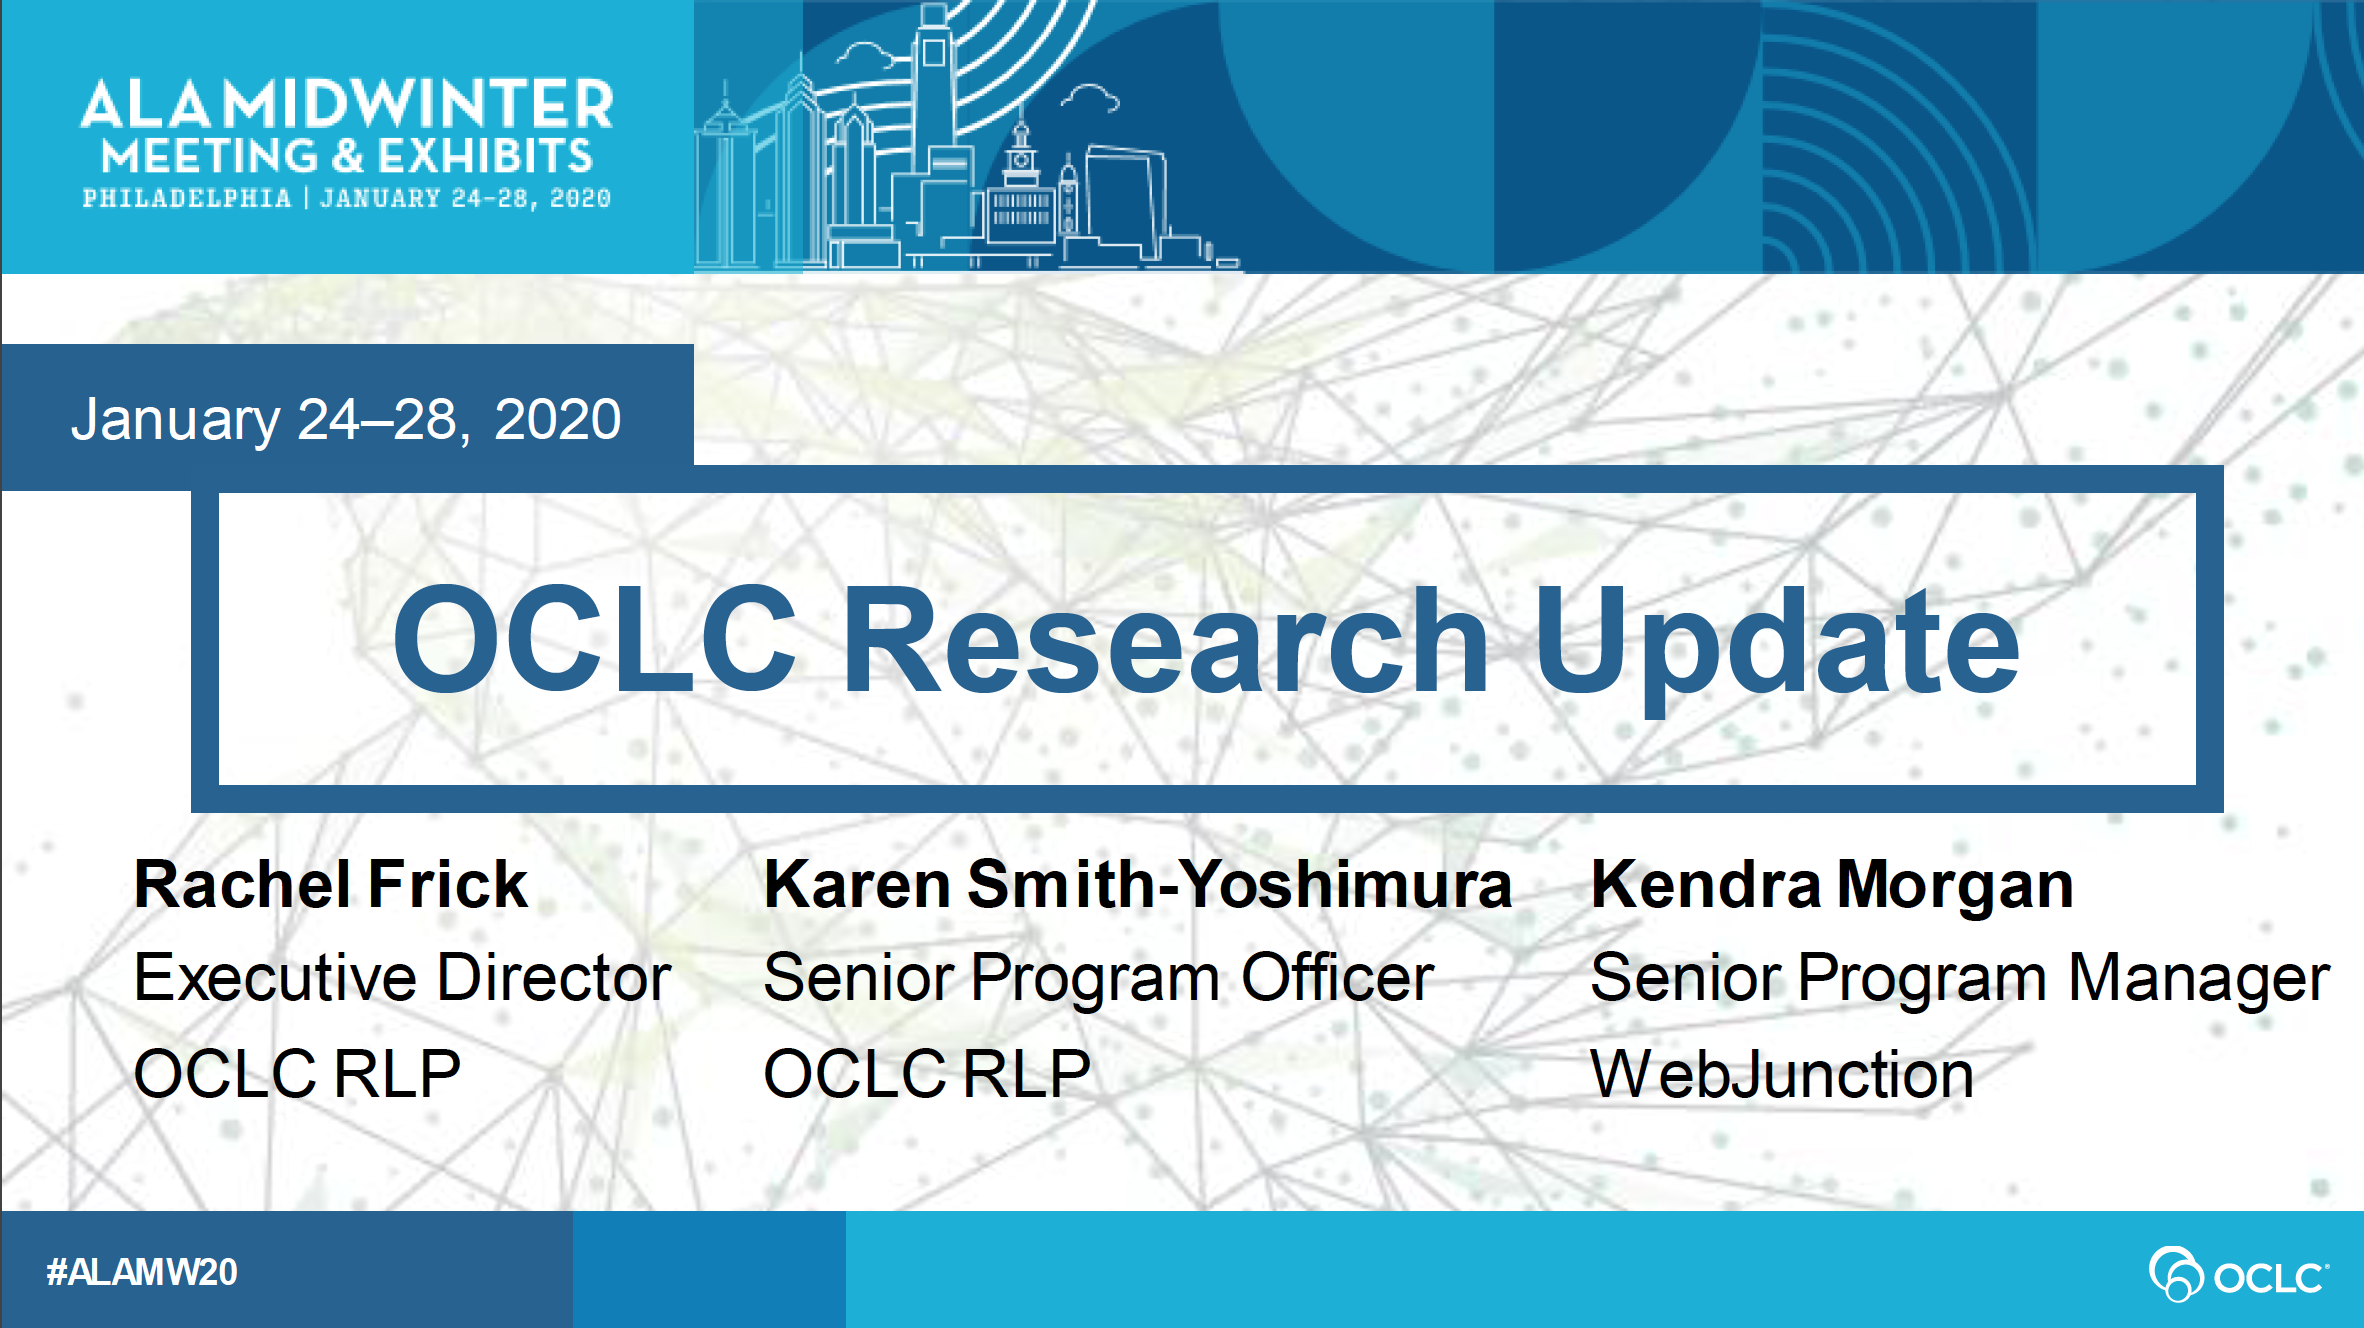 OCLC Research Update